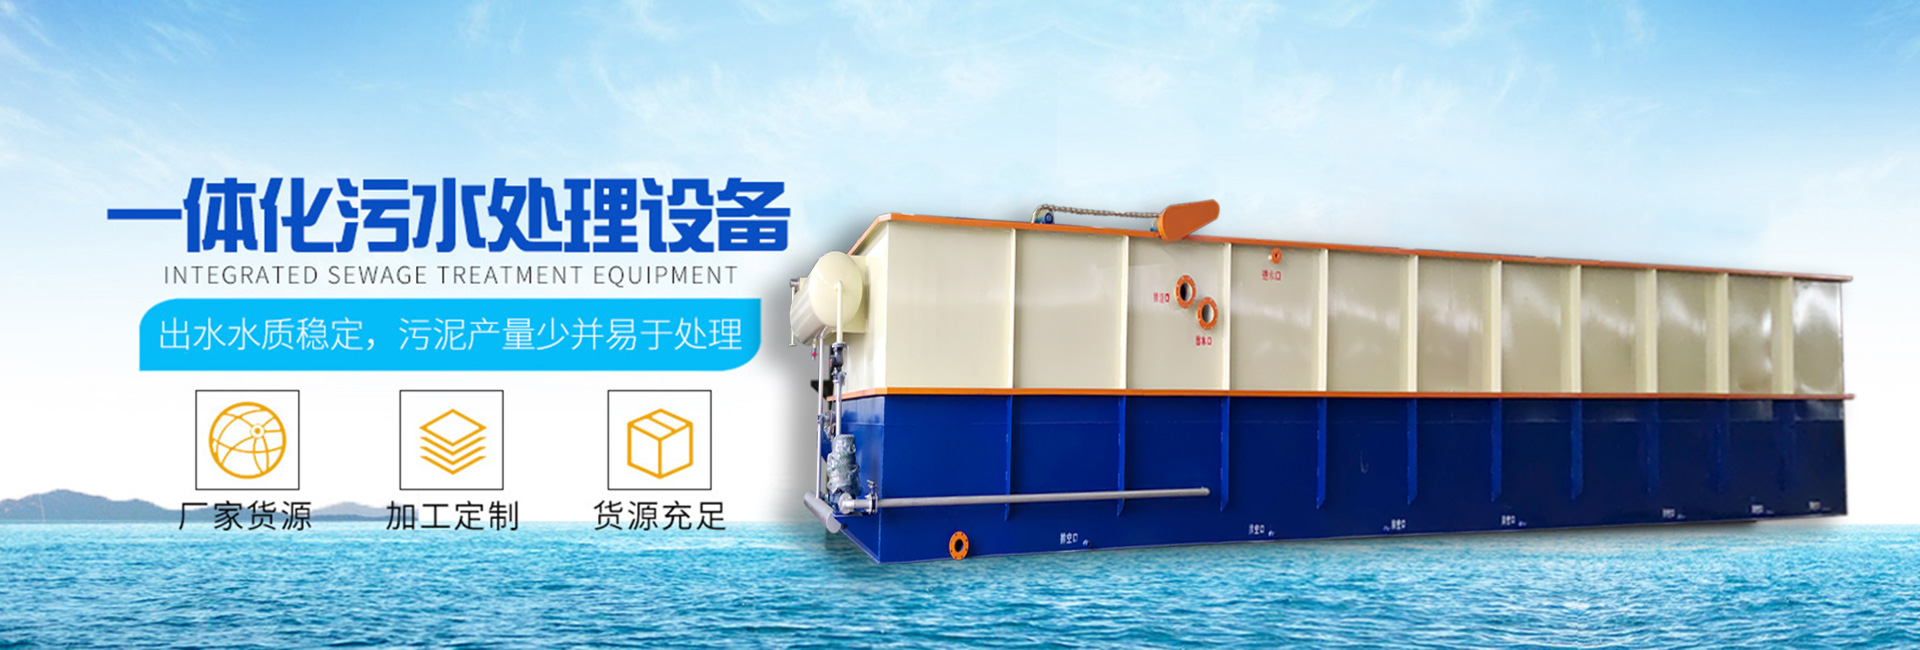 气浮机-一体化污水处理设备-火狐体育官方网站